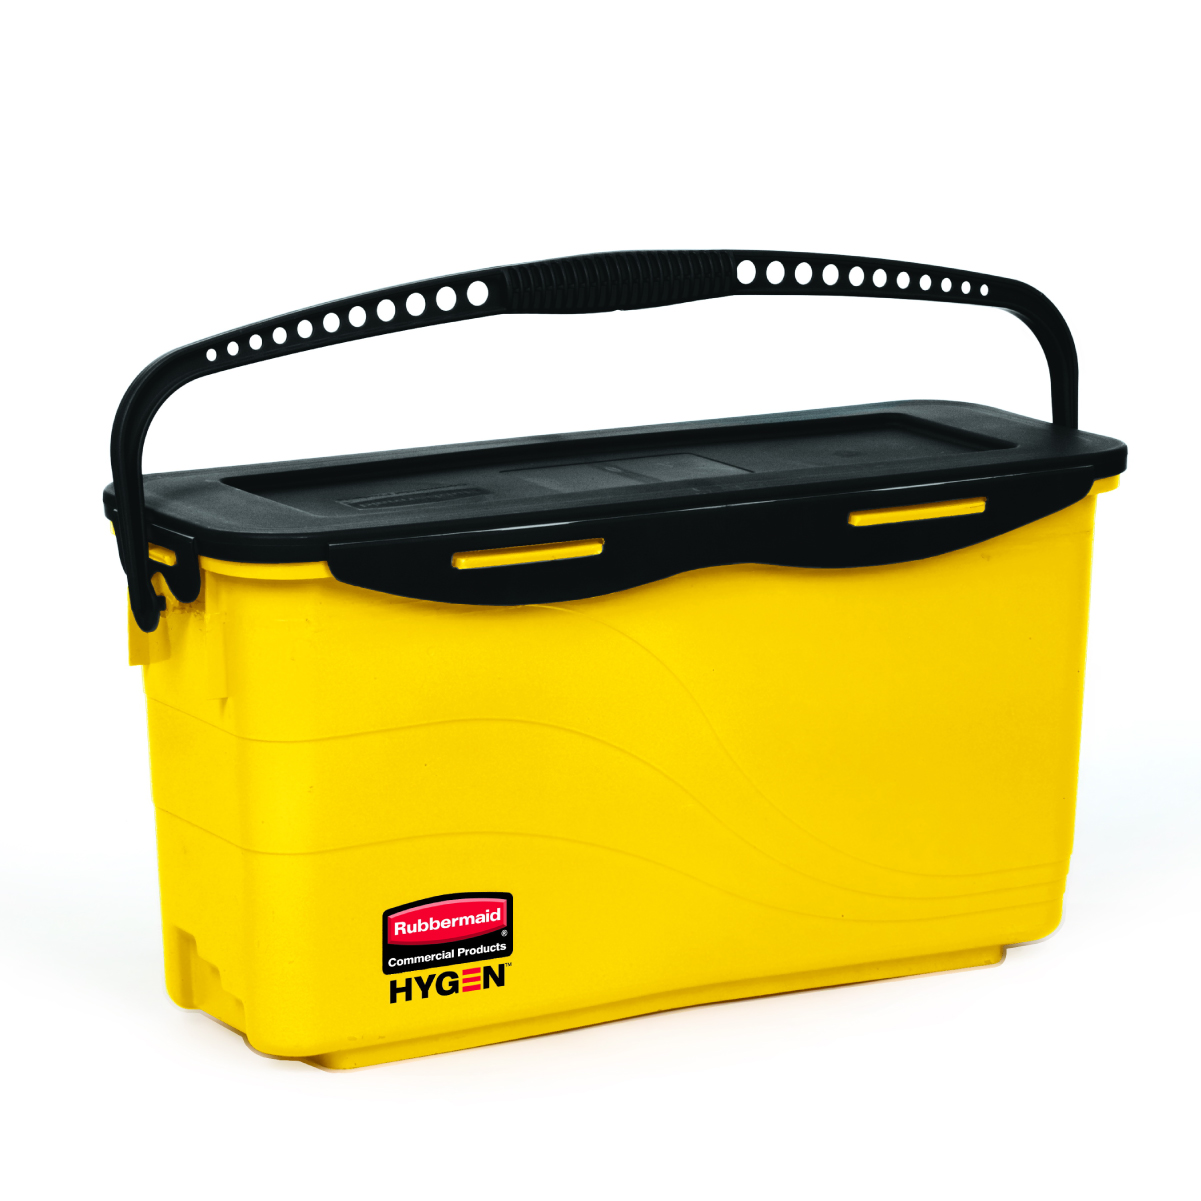 ถังใส่น้ำยาทำความสะอาดพร้อมตะแกรงกรอง HYGEN™ Microfiber Charging Bucket with Sieve สีเหลือง